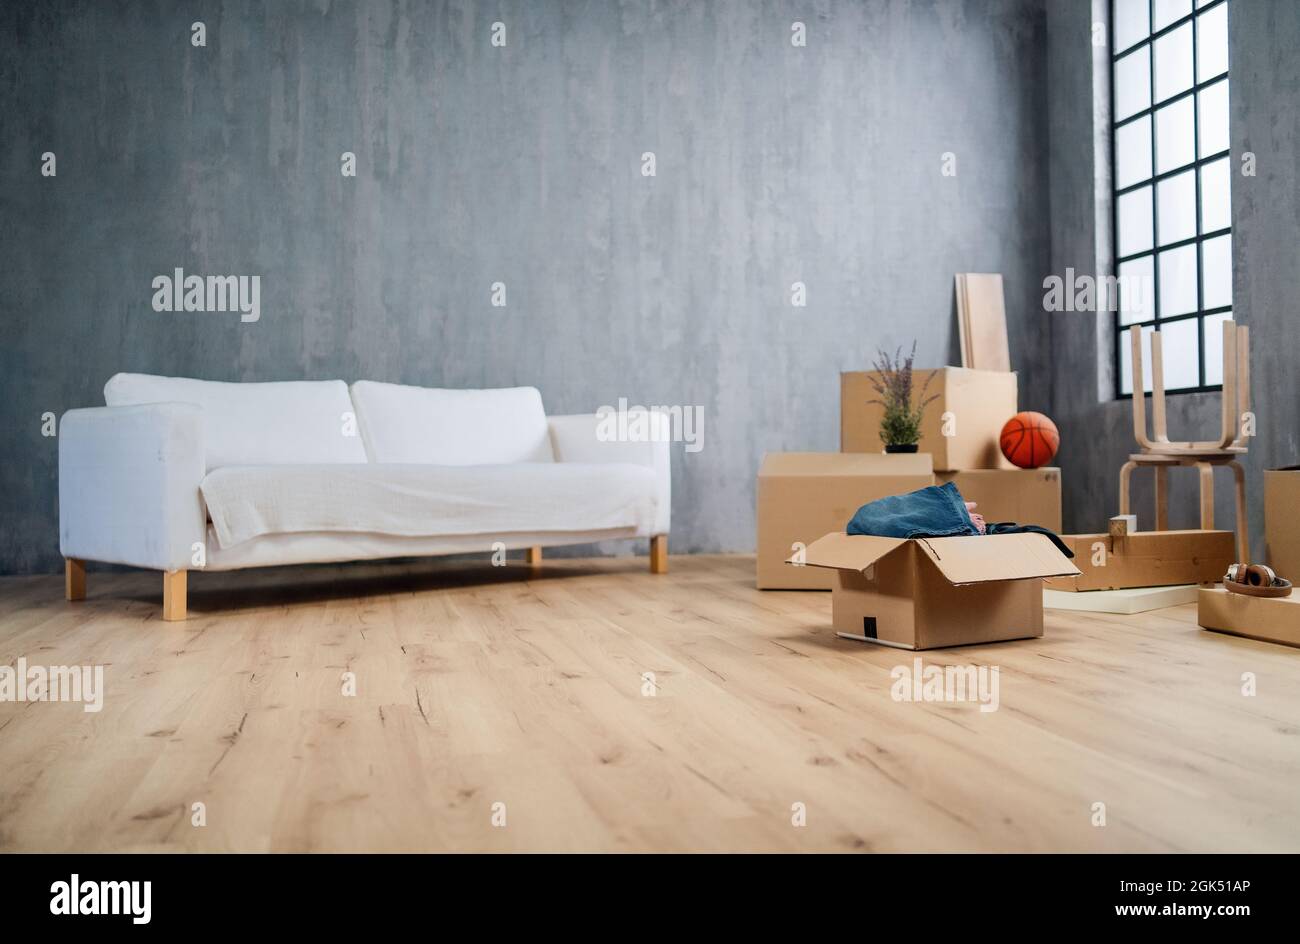 Soggiorno vuoto con scatole di cardbord pronto per disimballare, concetto di casa in movimento. Foto Stock